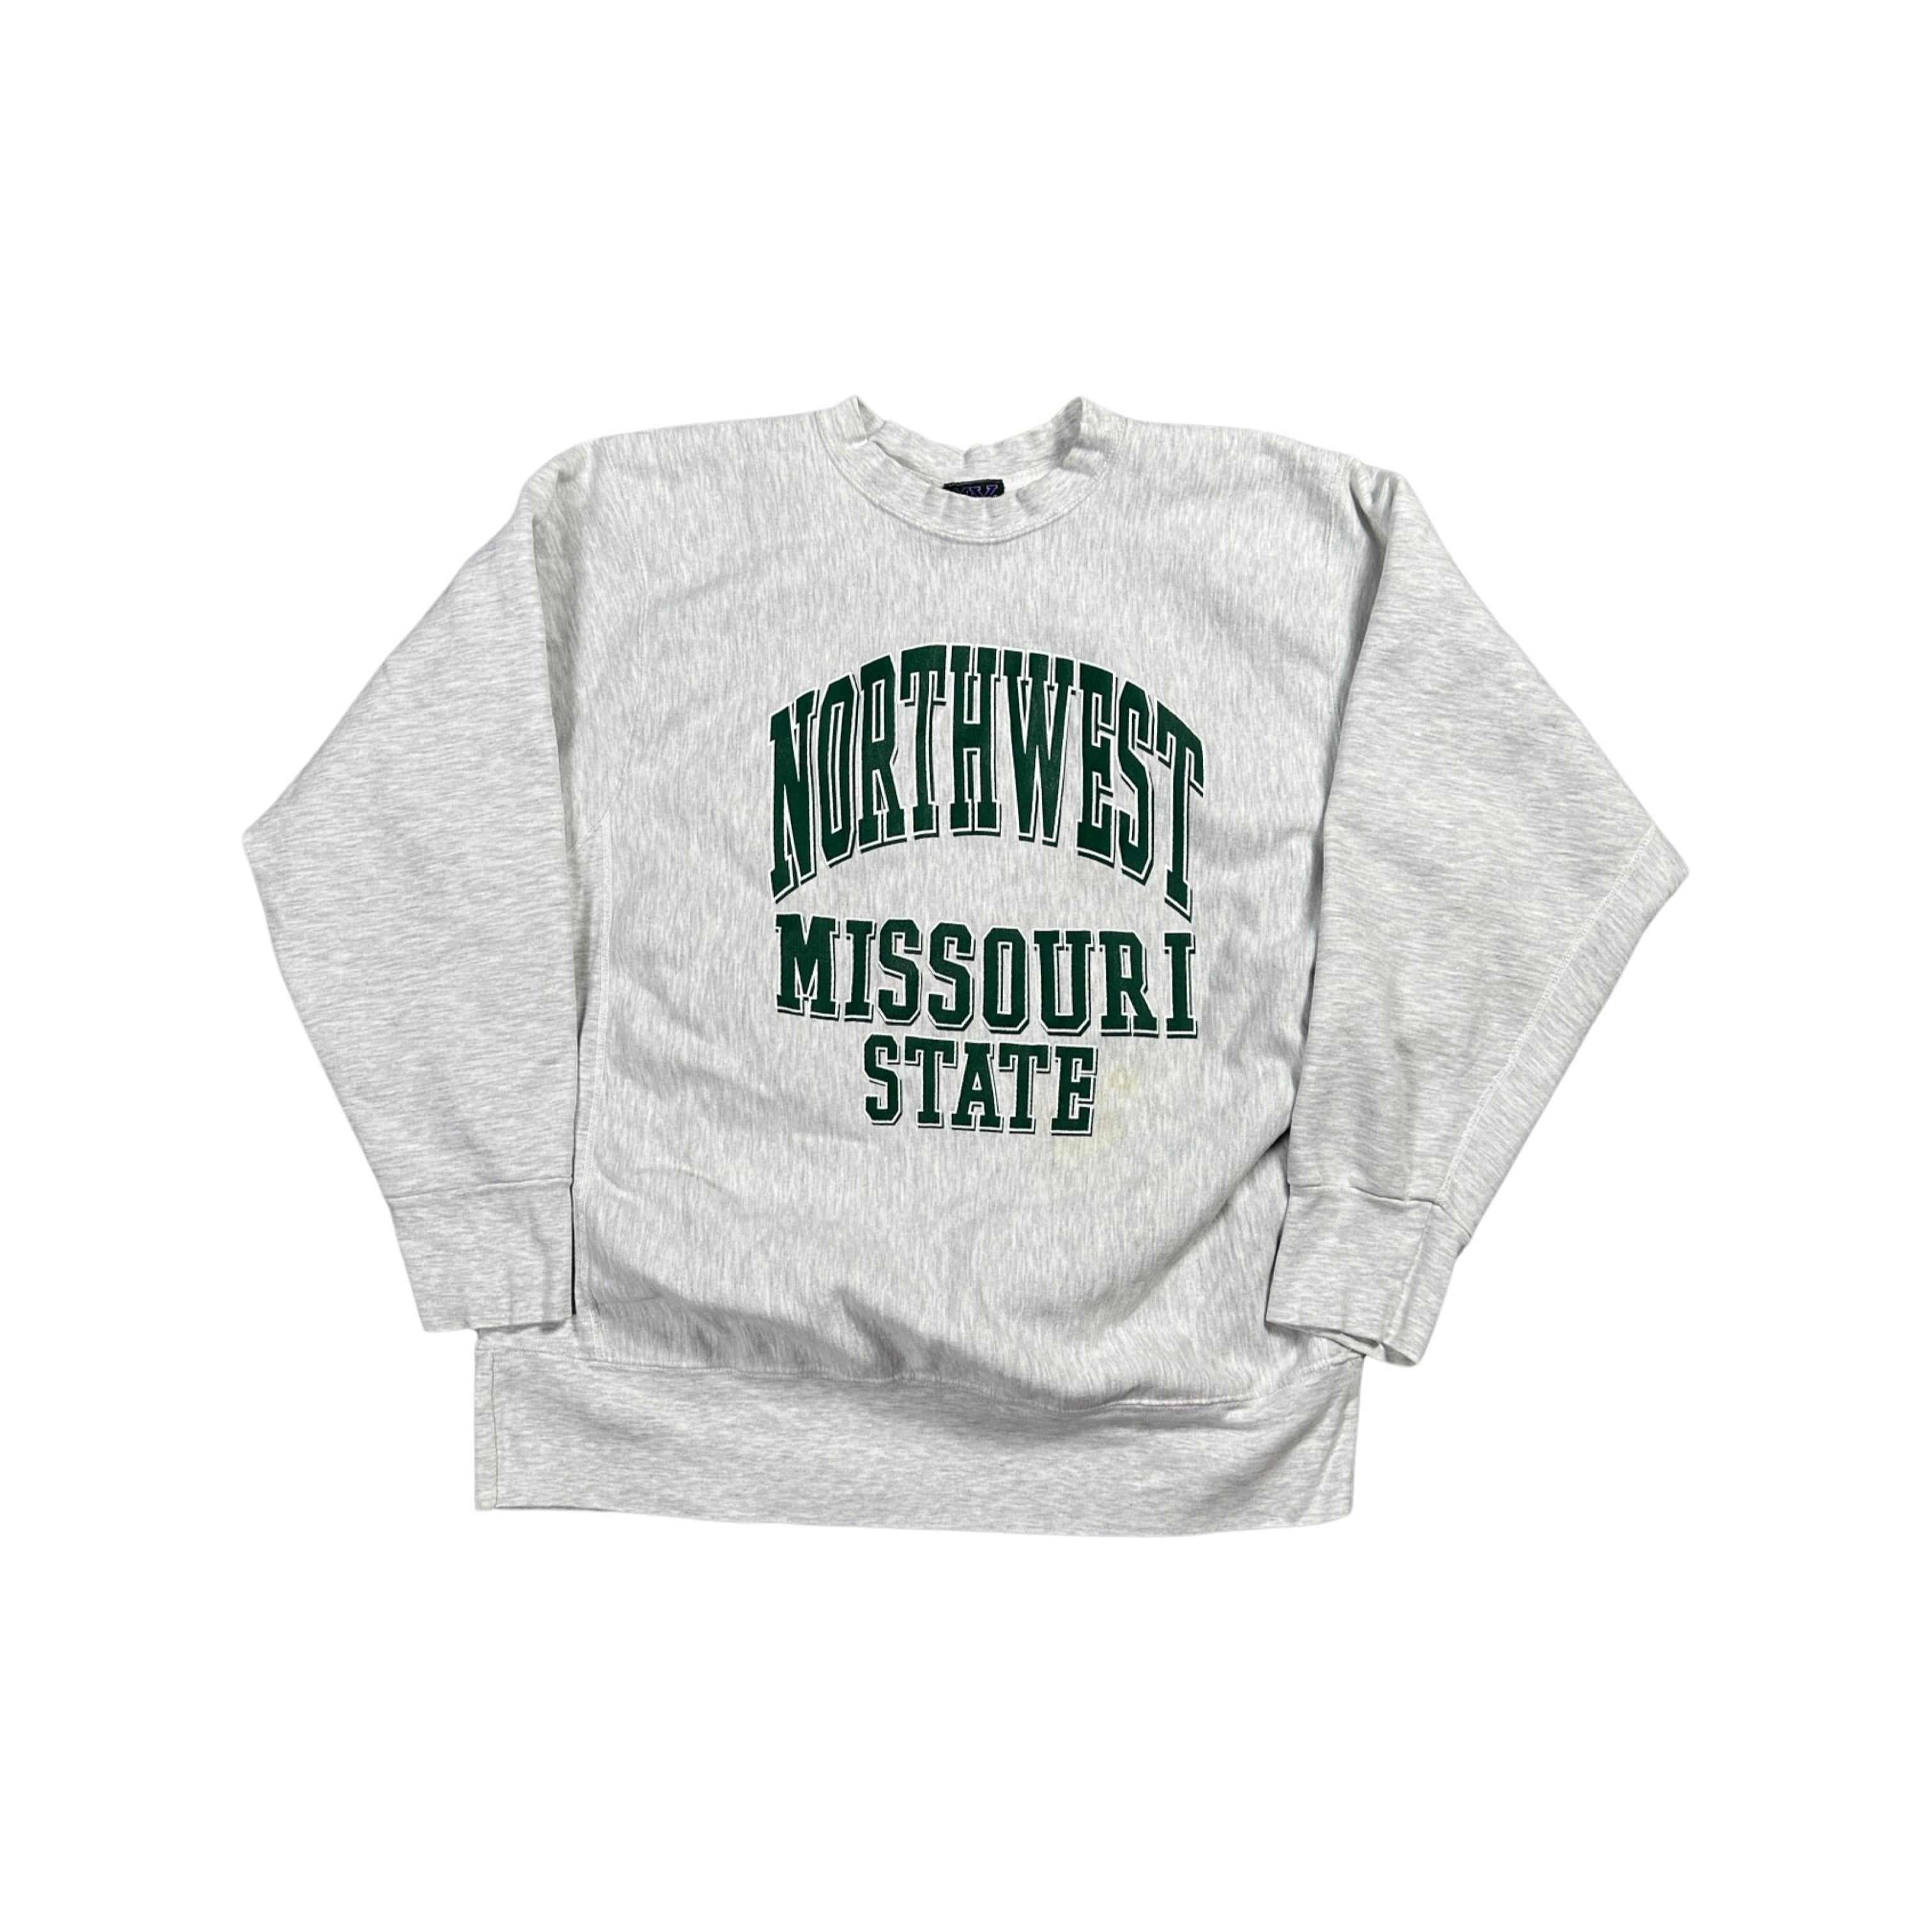 Northwest Missouri State 90s Sweater (XL)